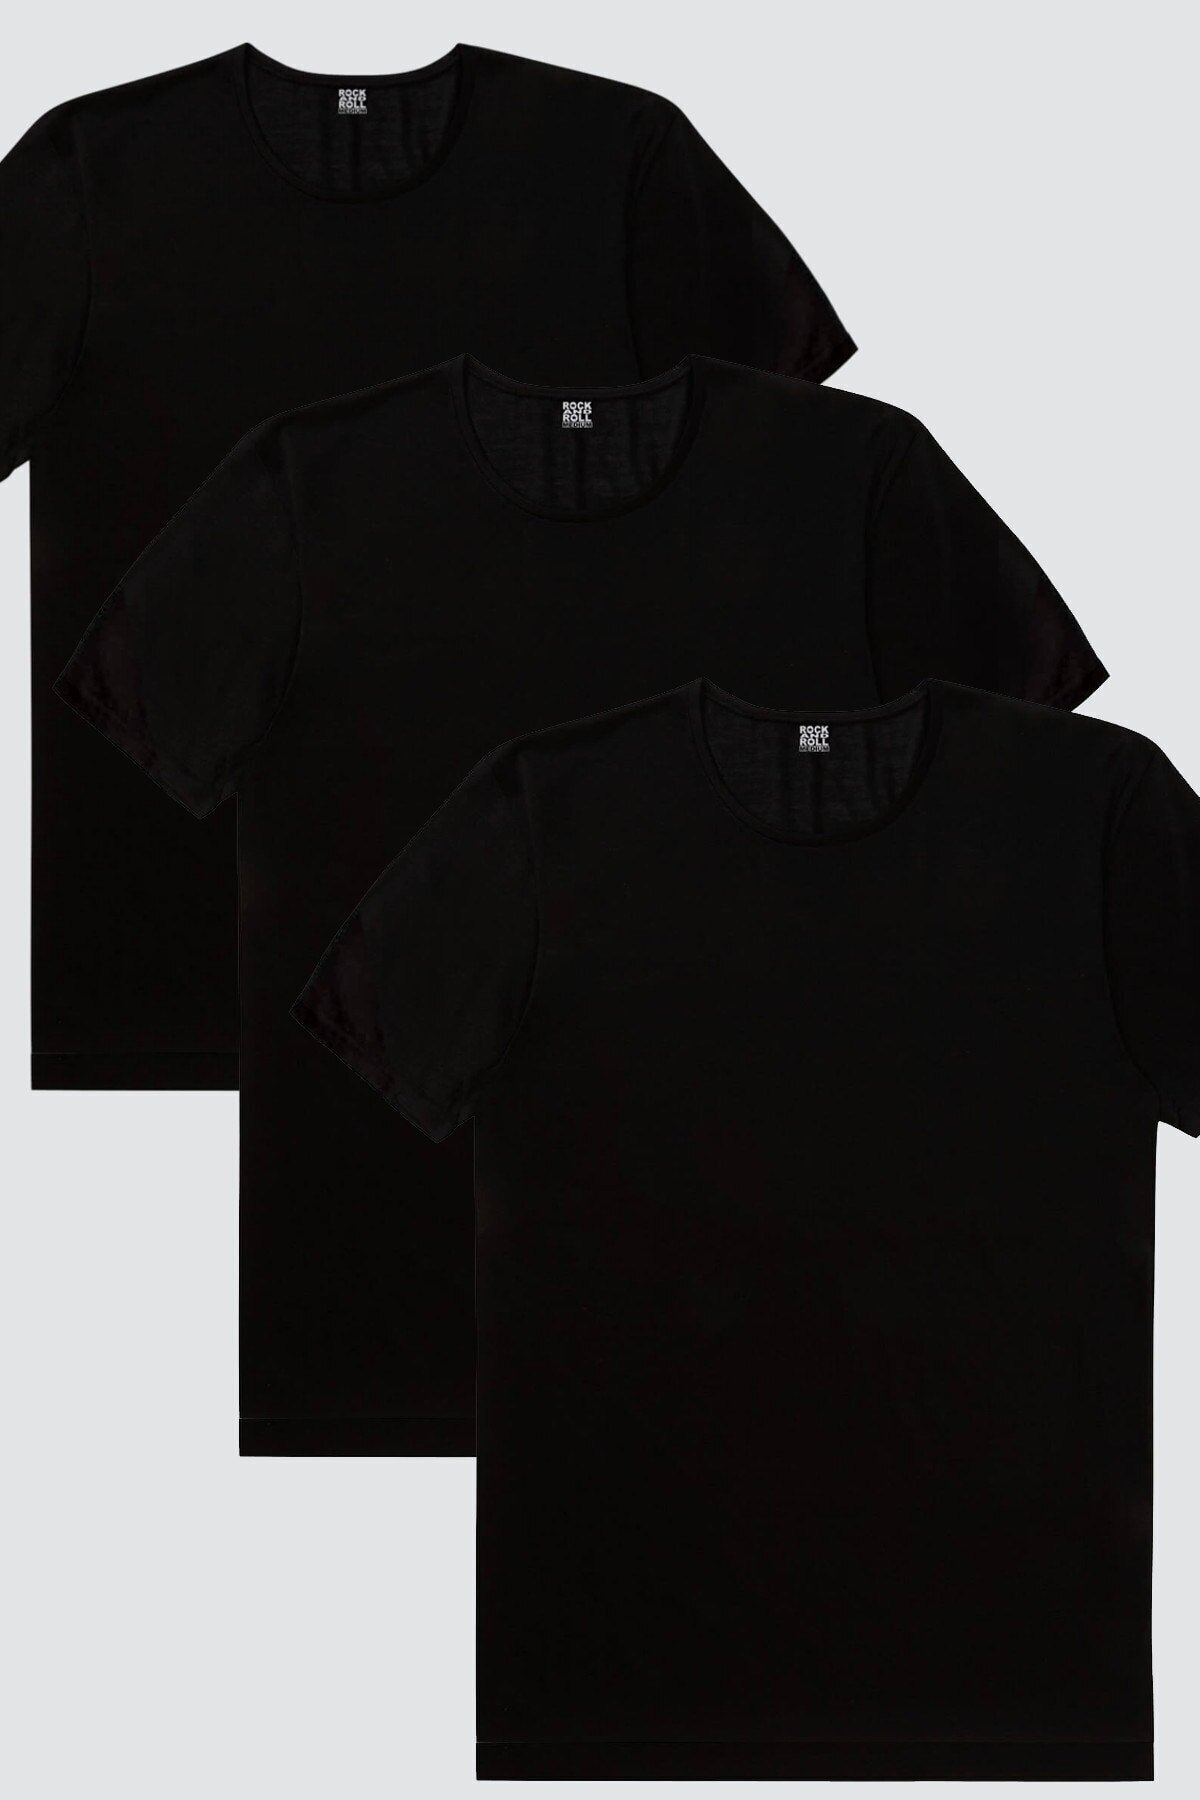 Düz, Baskısız Siyah Kadın 3'lü Eko Paket T-shirt